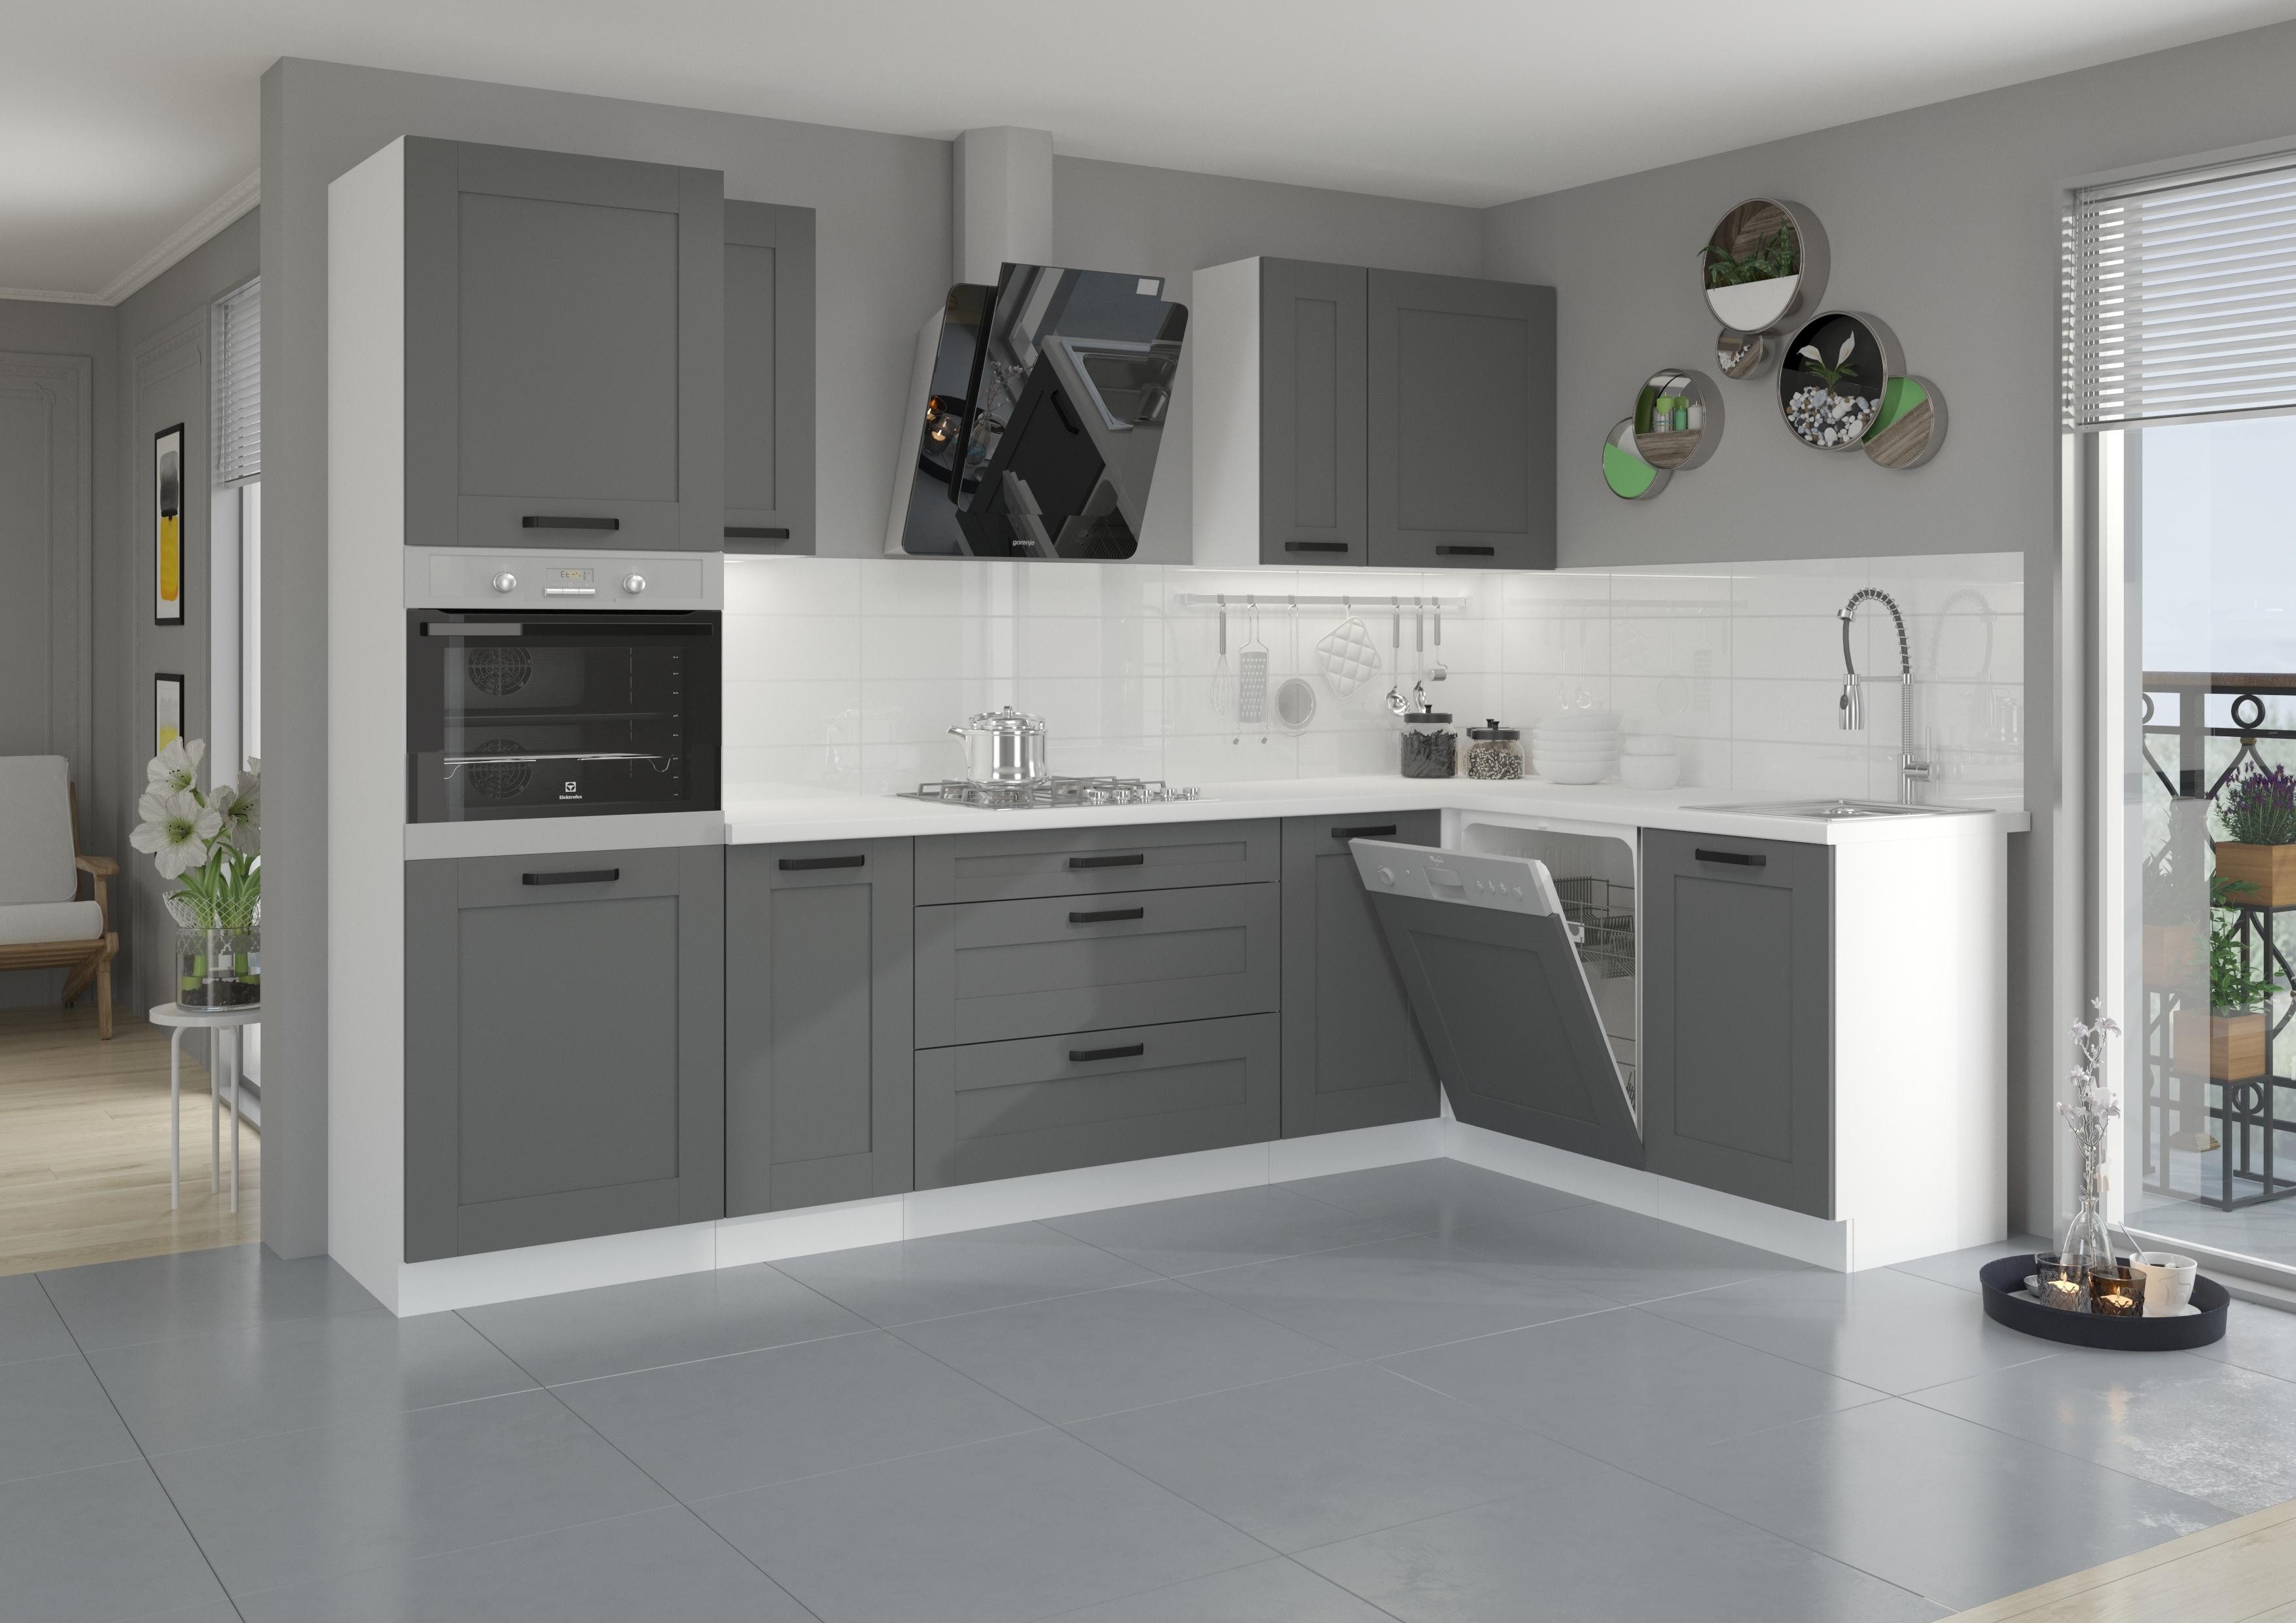 ROYAL24_MARKT Winkelküche Zeitlos modern Küchenmöbel, die Qualität und Schönheit vereinen, Funktionale Aufbewahrung - Robuste Materialien - Leicht zu reinigen